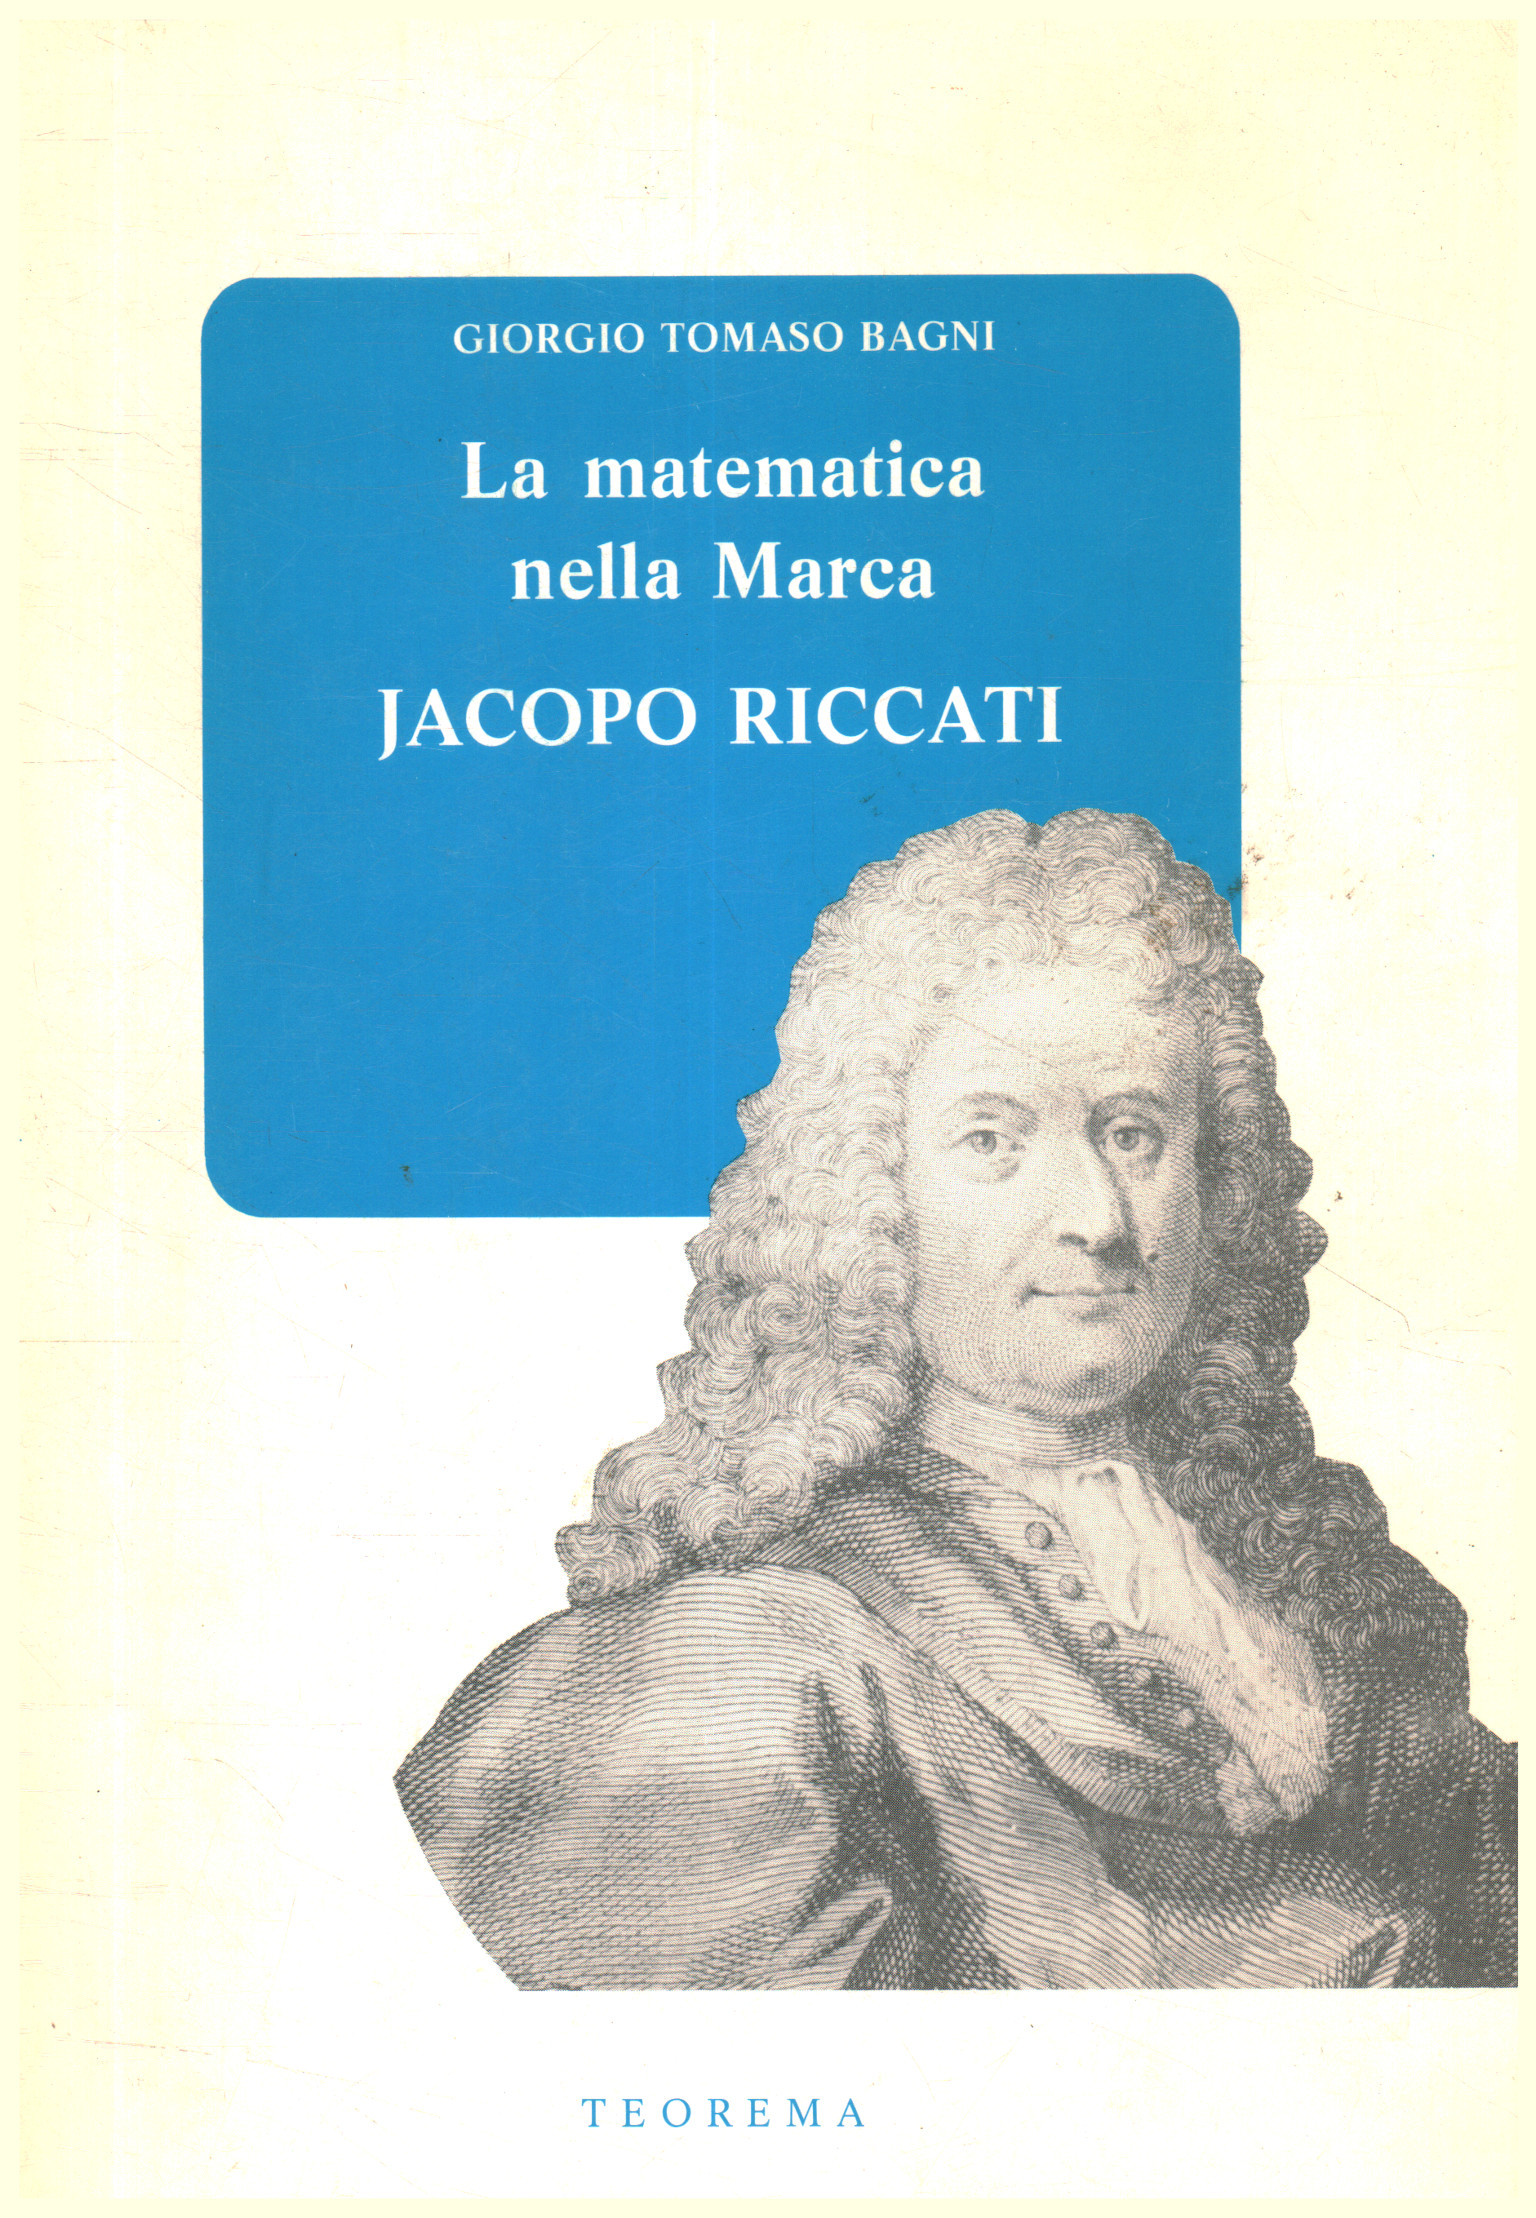 La matematica nella Marca: Jacopo Riccat